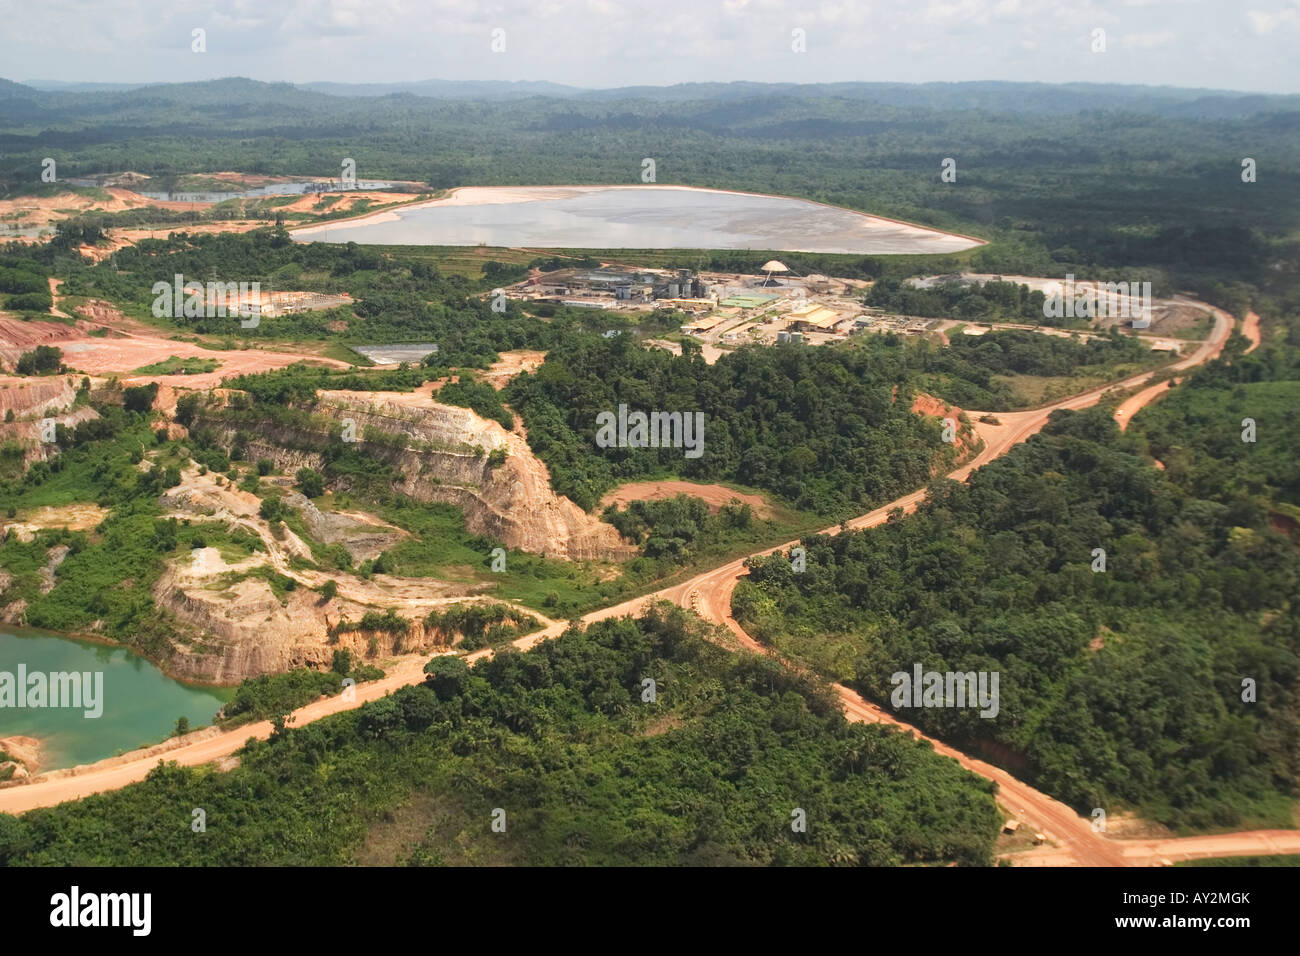 Luftaufnahme der Oberfläche Goldmine, zeigt Verarbeitung Pflanze und Bergematerial Damm in Ghana Westafrika Stockfoto